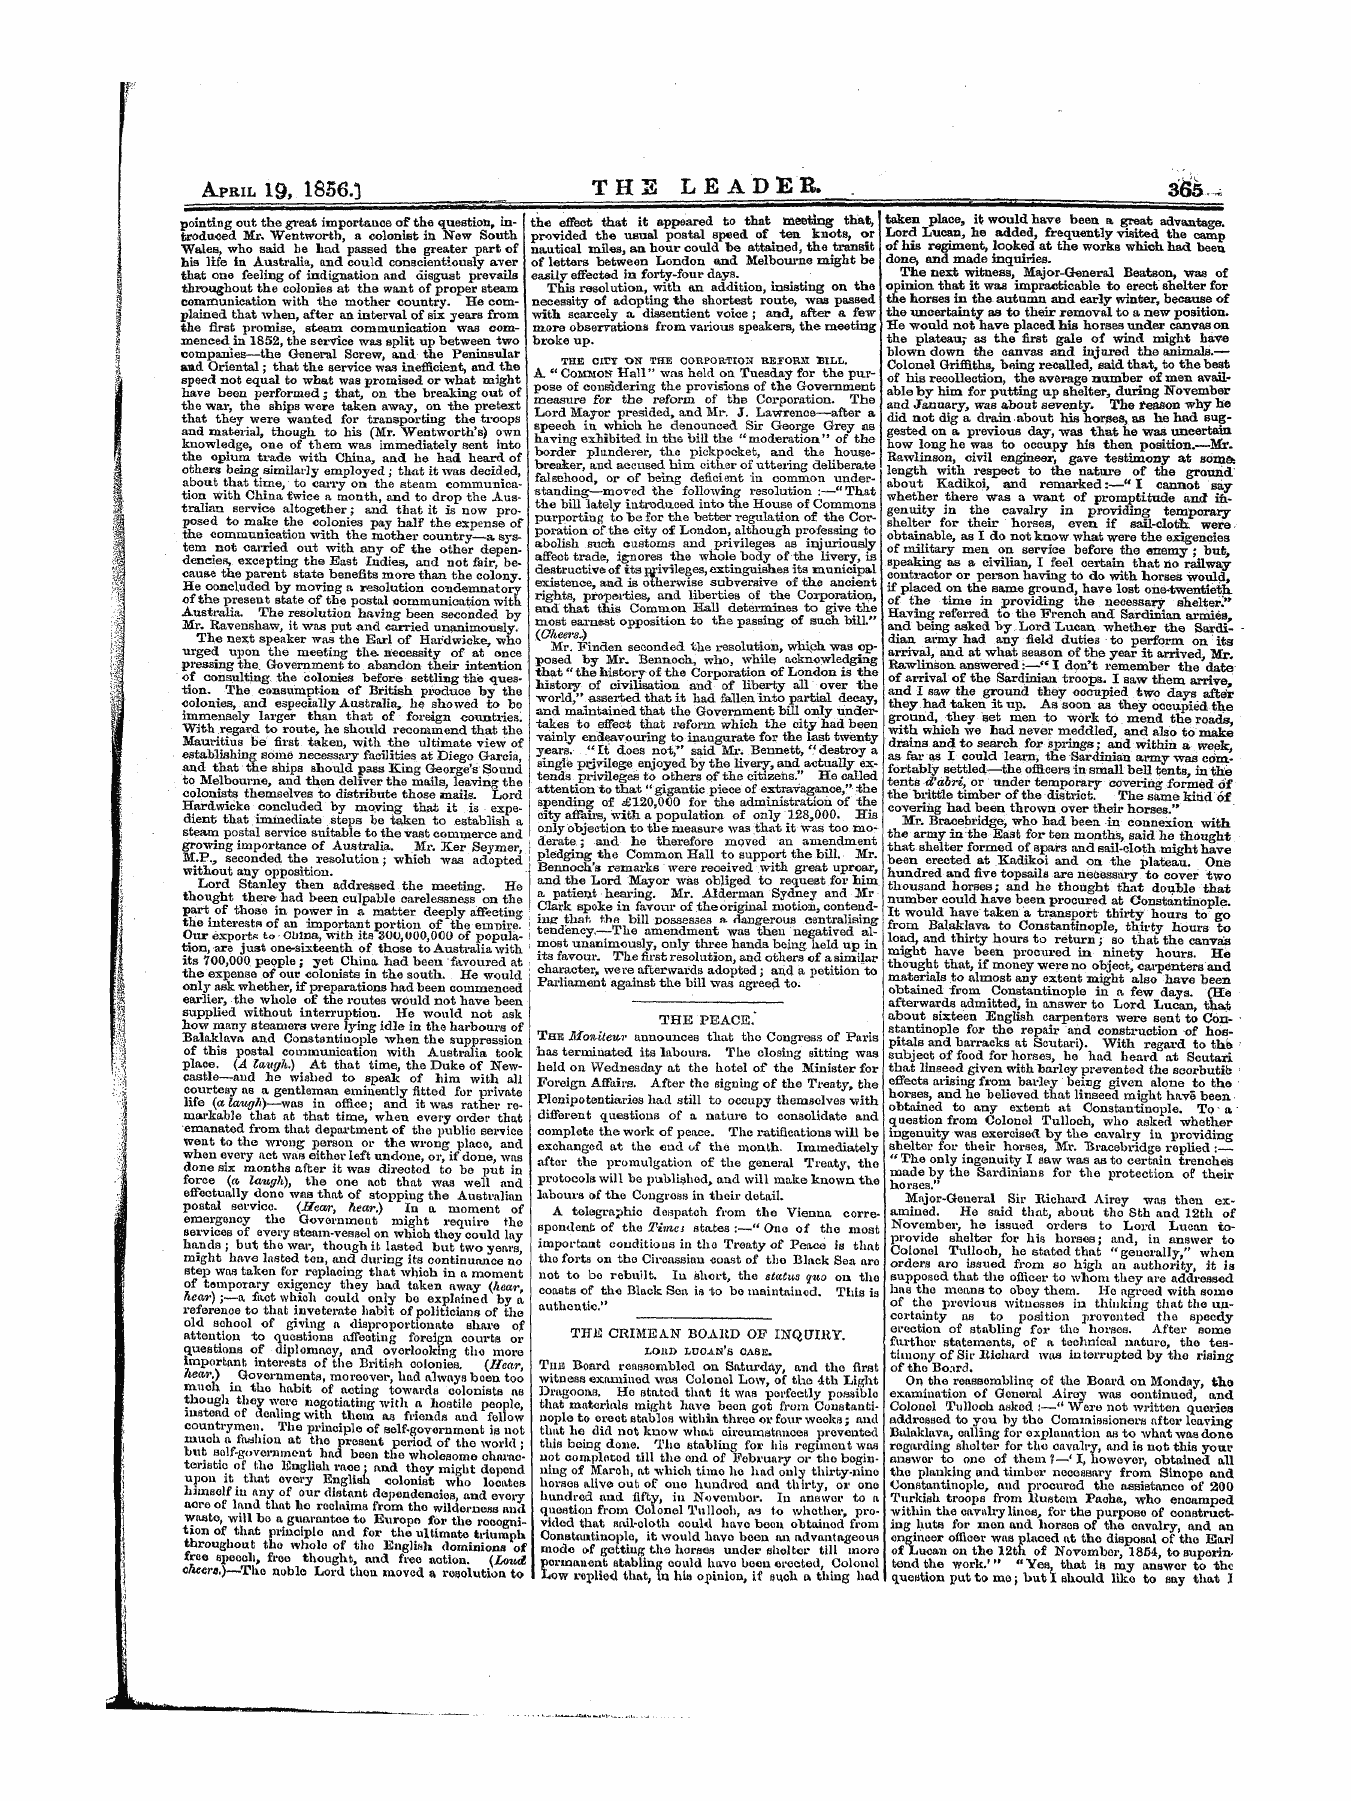 Leader (1850-1860): jS F Y, 1st edition - Nnmwaw Im N^ Ttvtarrtuv J.Jiiu Ckim.Ii.Ain Buaicu Uti Ljxwjluy